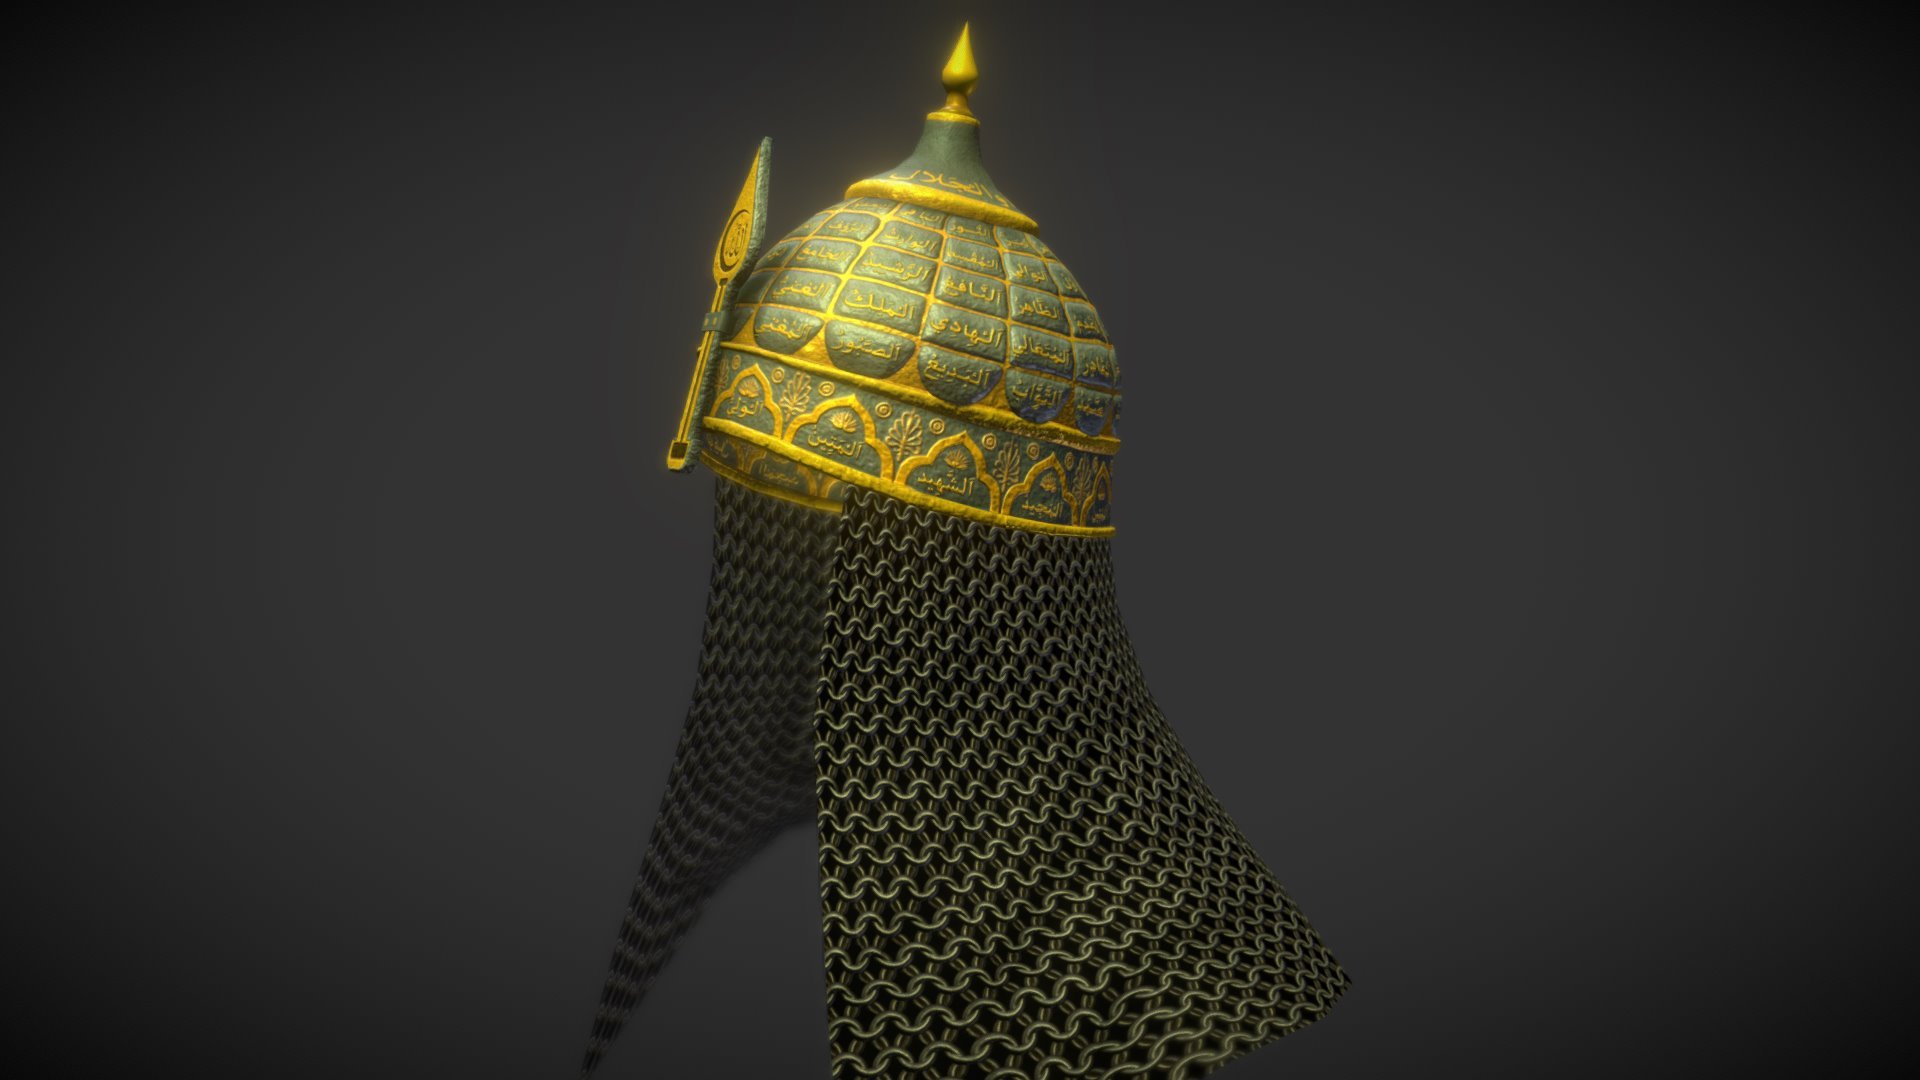 Helm of conqueror (Fatih sultan Mehmed)